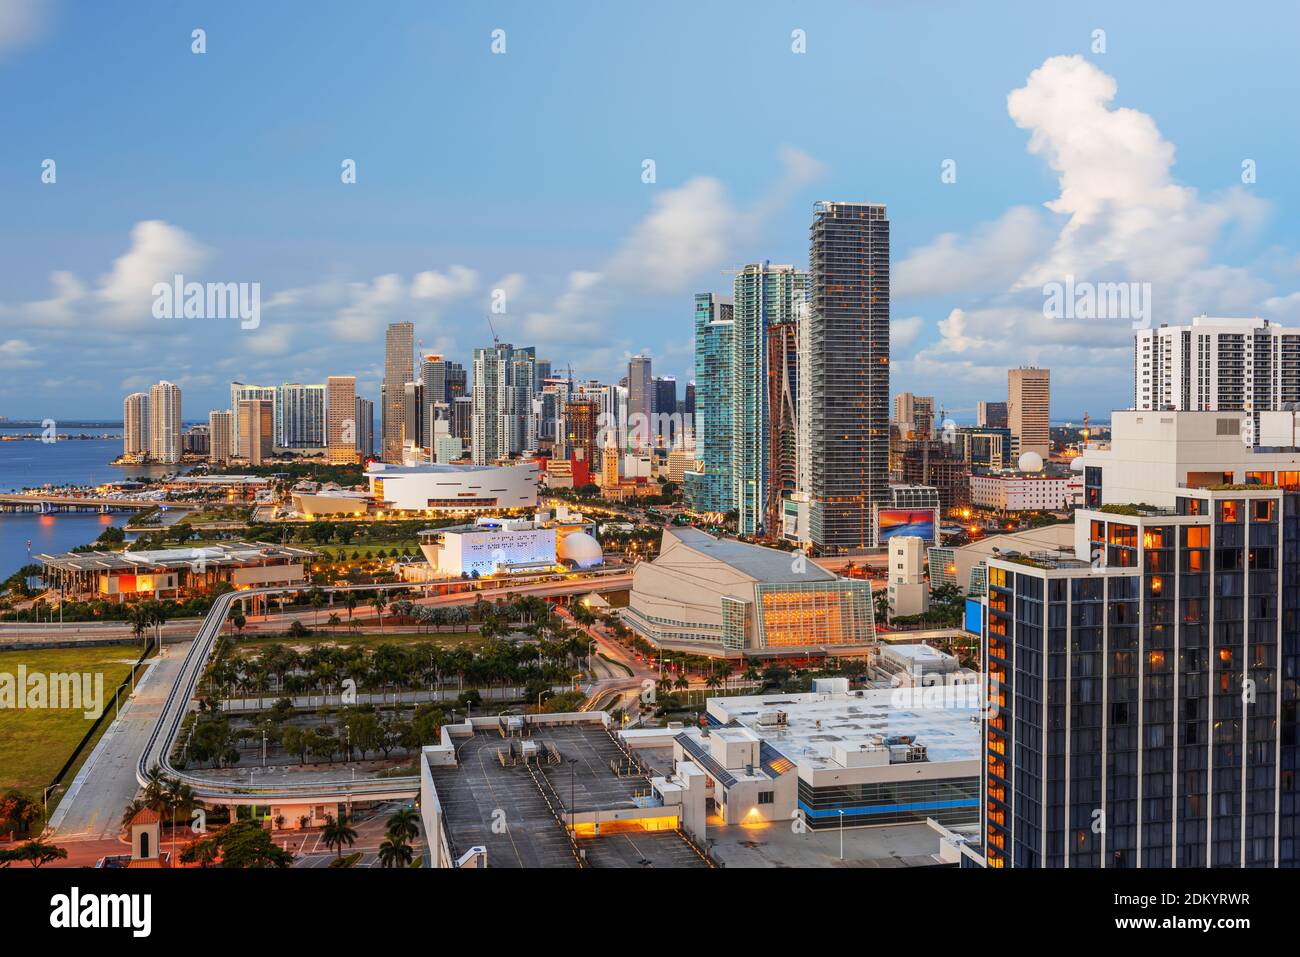 Miami, Florida, USA downtown cityscape at dusk. Stock Photo